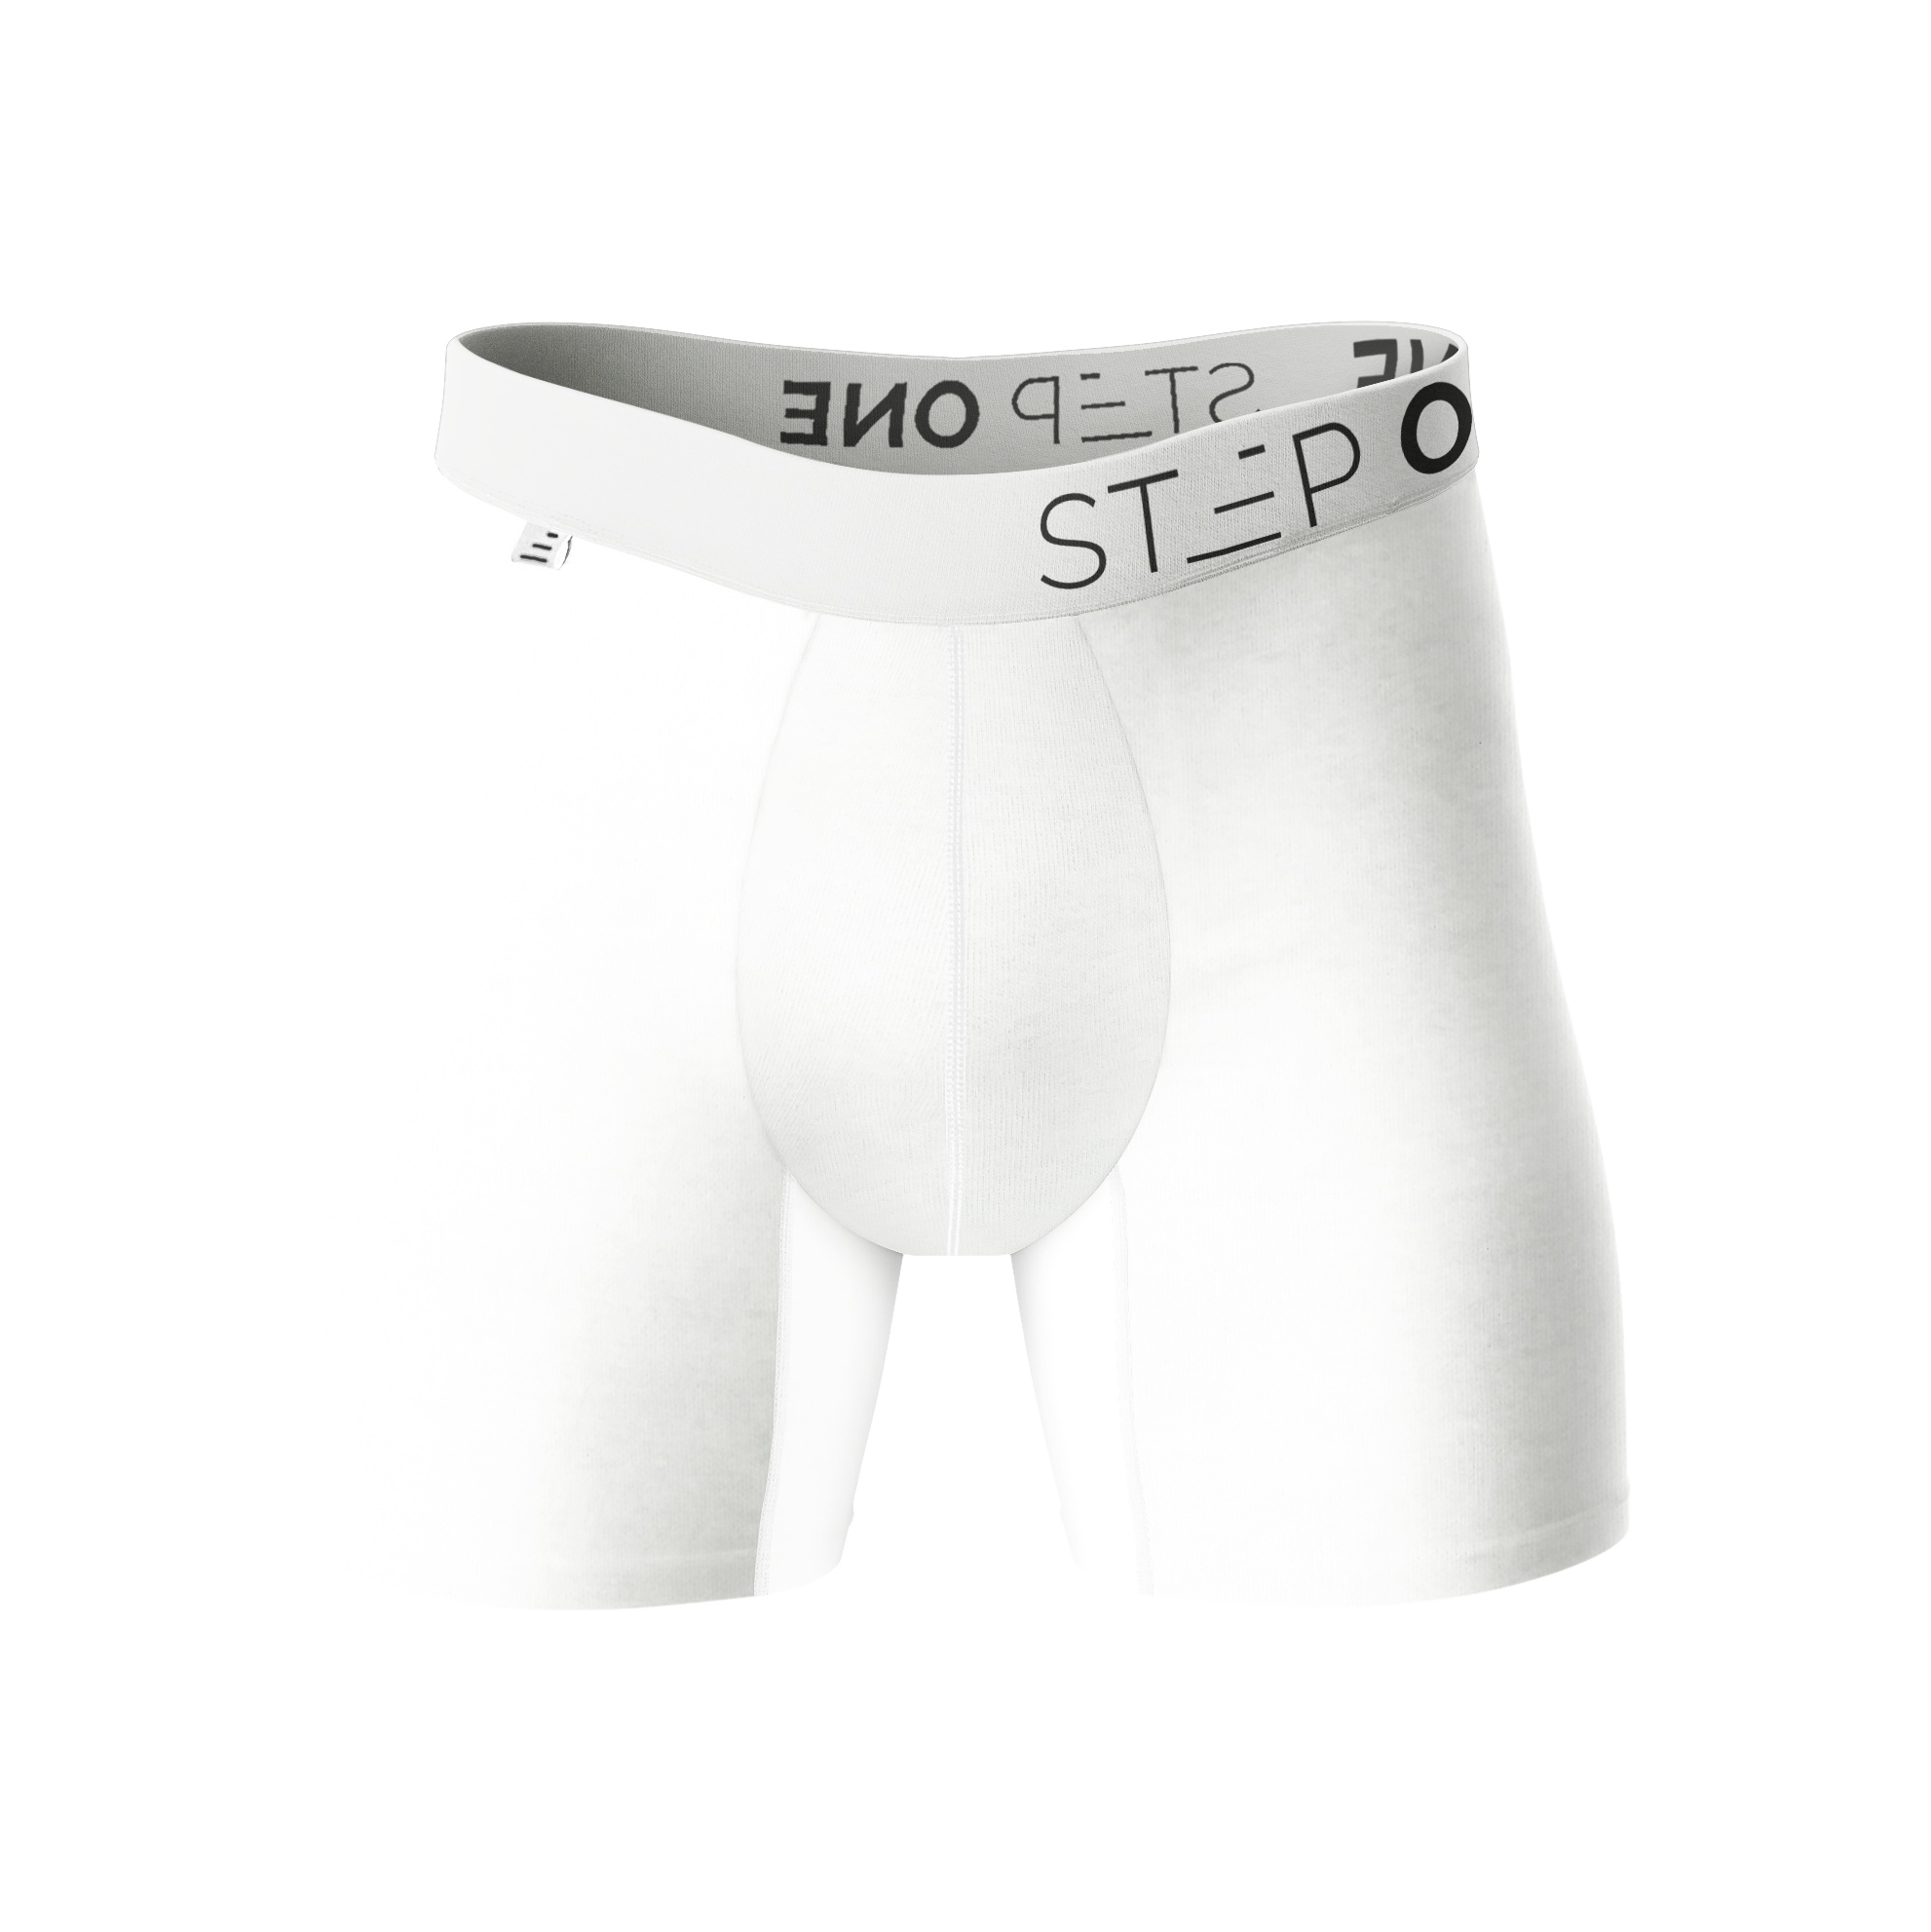 Boxer Brief - Originals  Step One Bamboo Underwear US